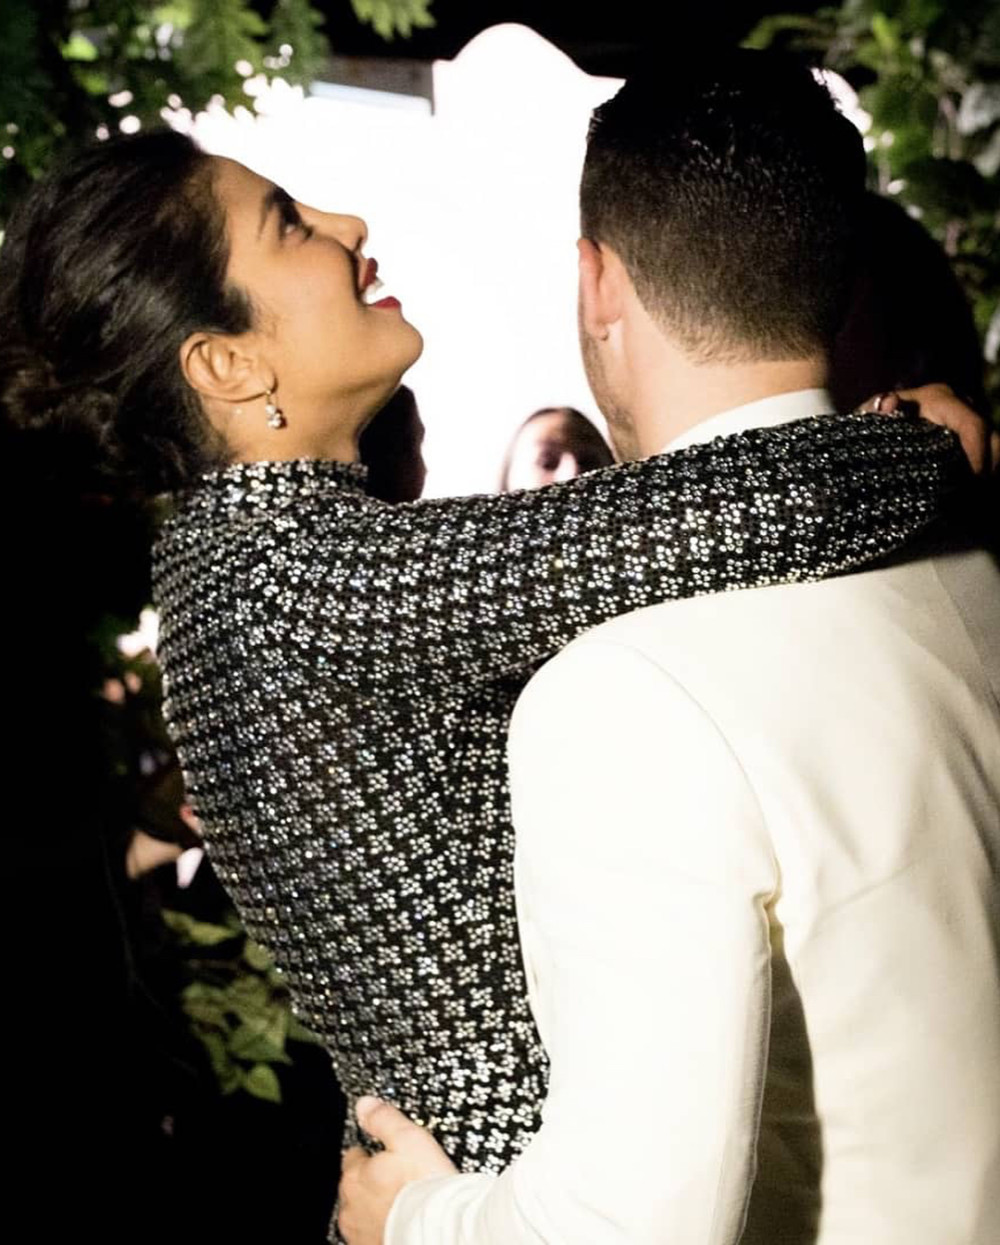 We ❤ these Photos of newly engaged couple Priyanka Chopra & Nick Jonas | BellaNaija